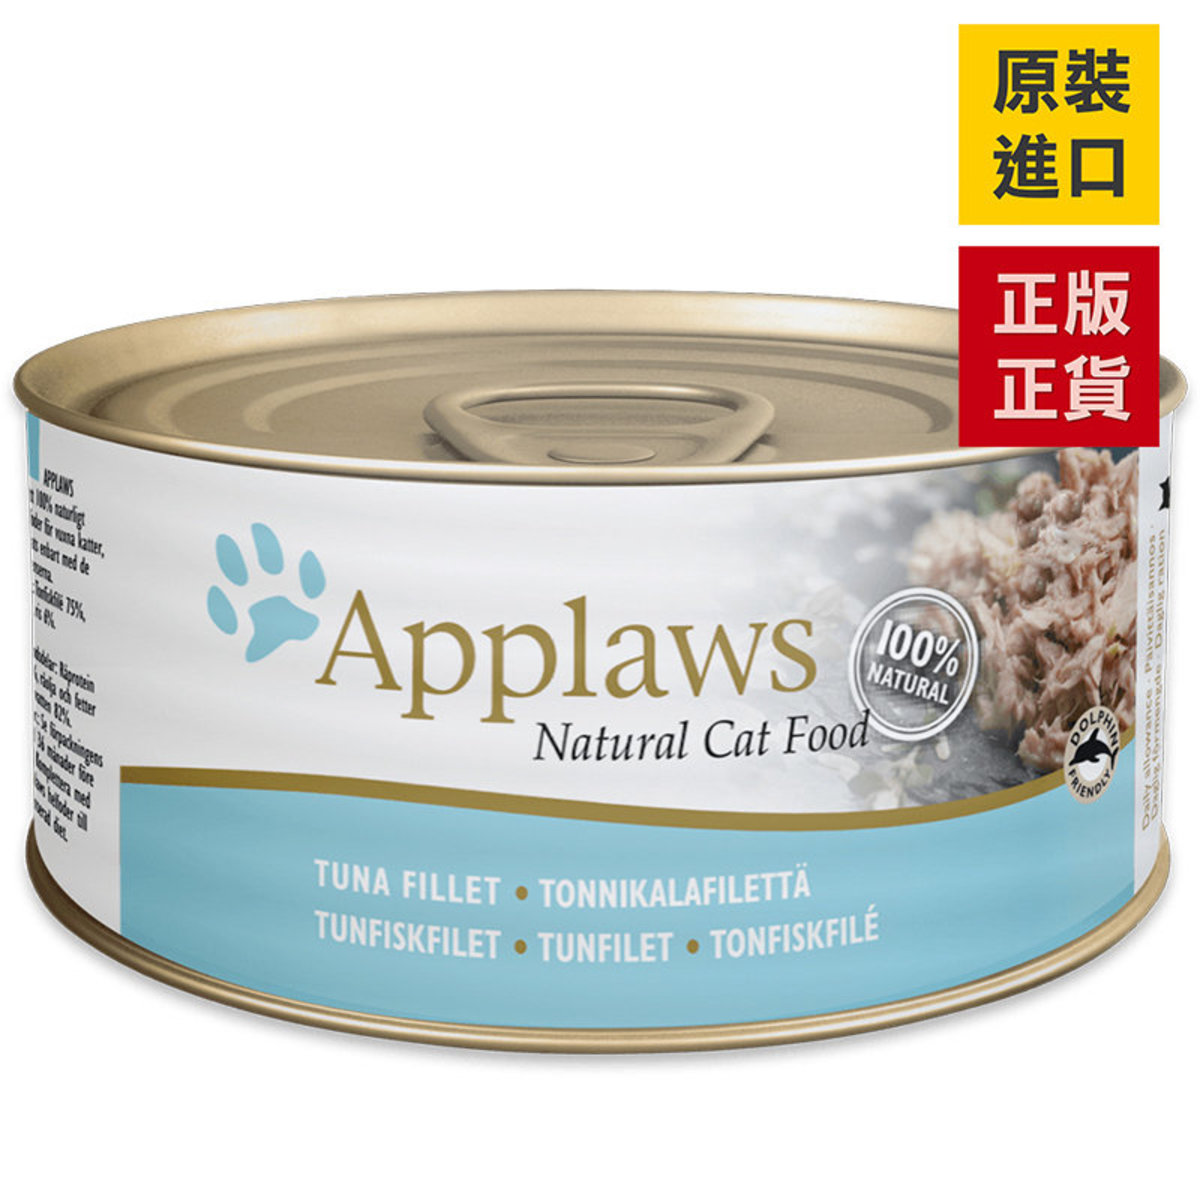 吞拿魚 貓罐頭 156g 成長健康 75%肉含量 貓罐頭